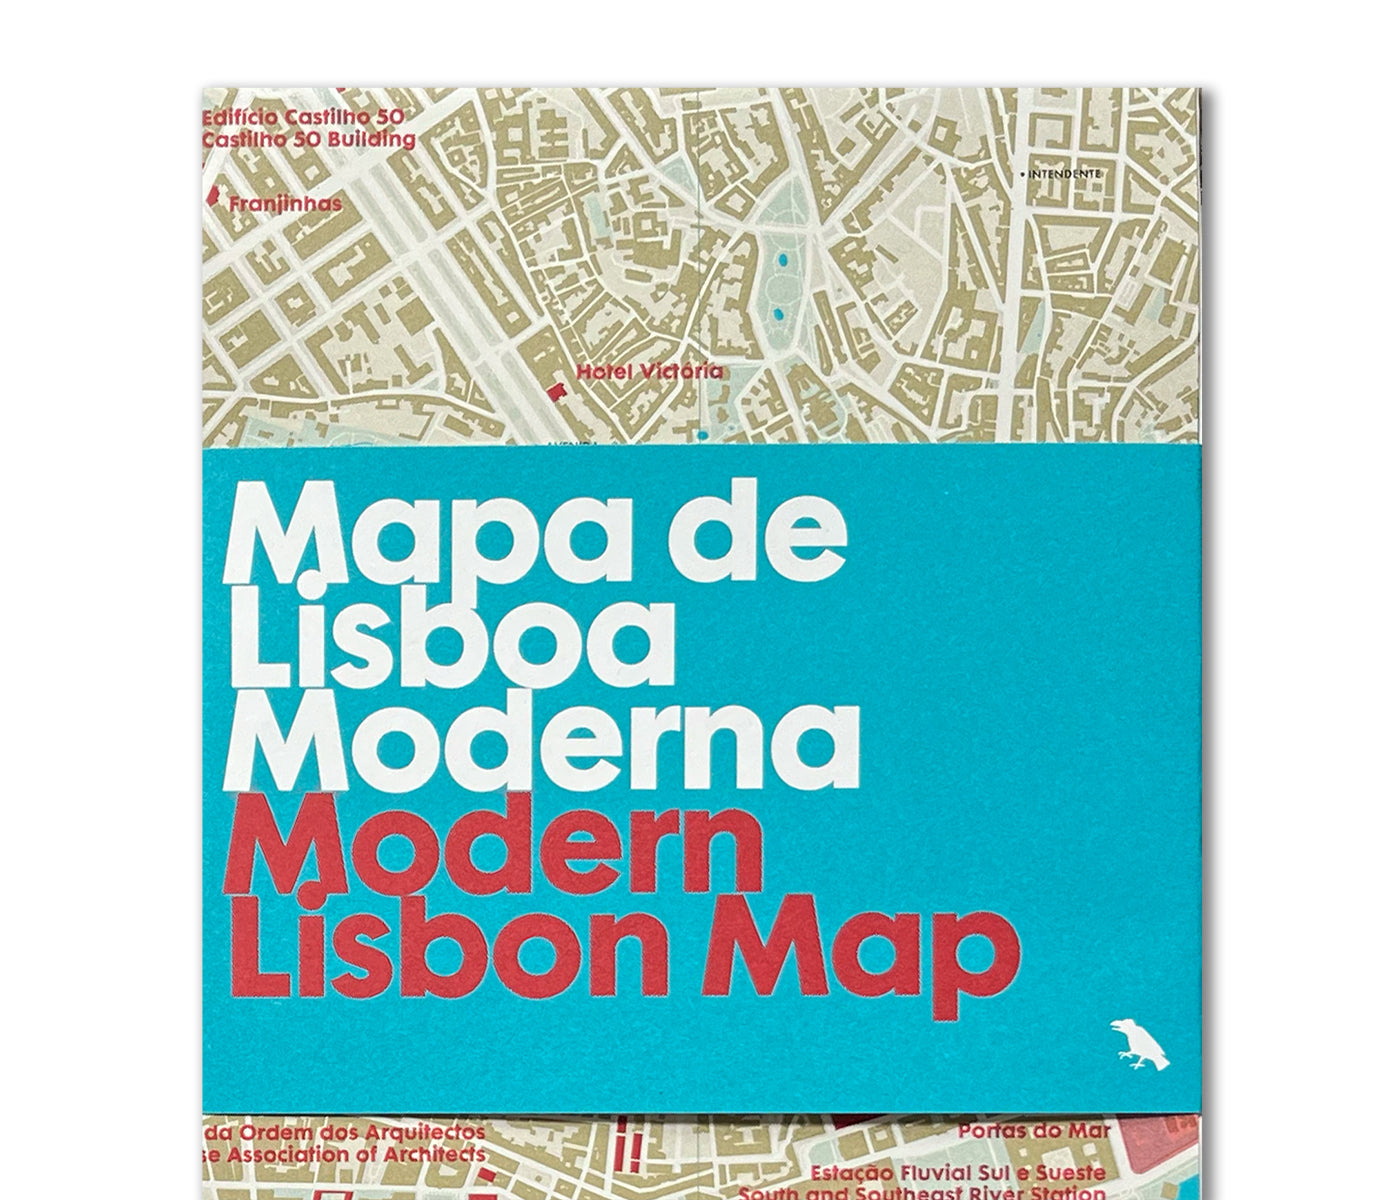 Modern Lisbon Map / Mapa de Lisboa Moderna